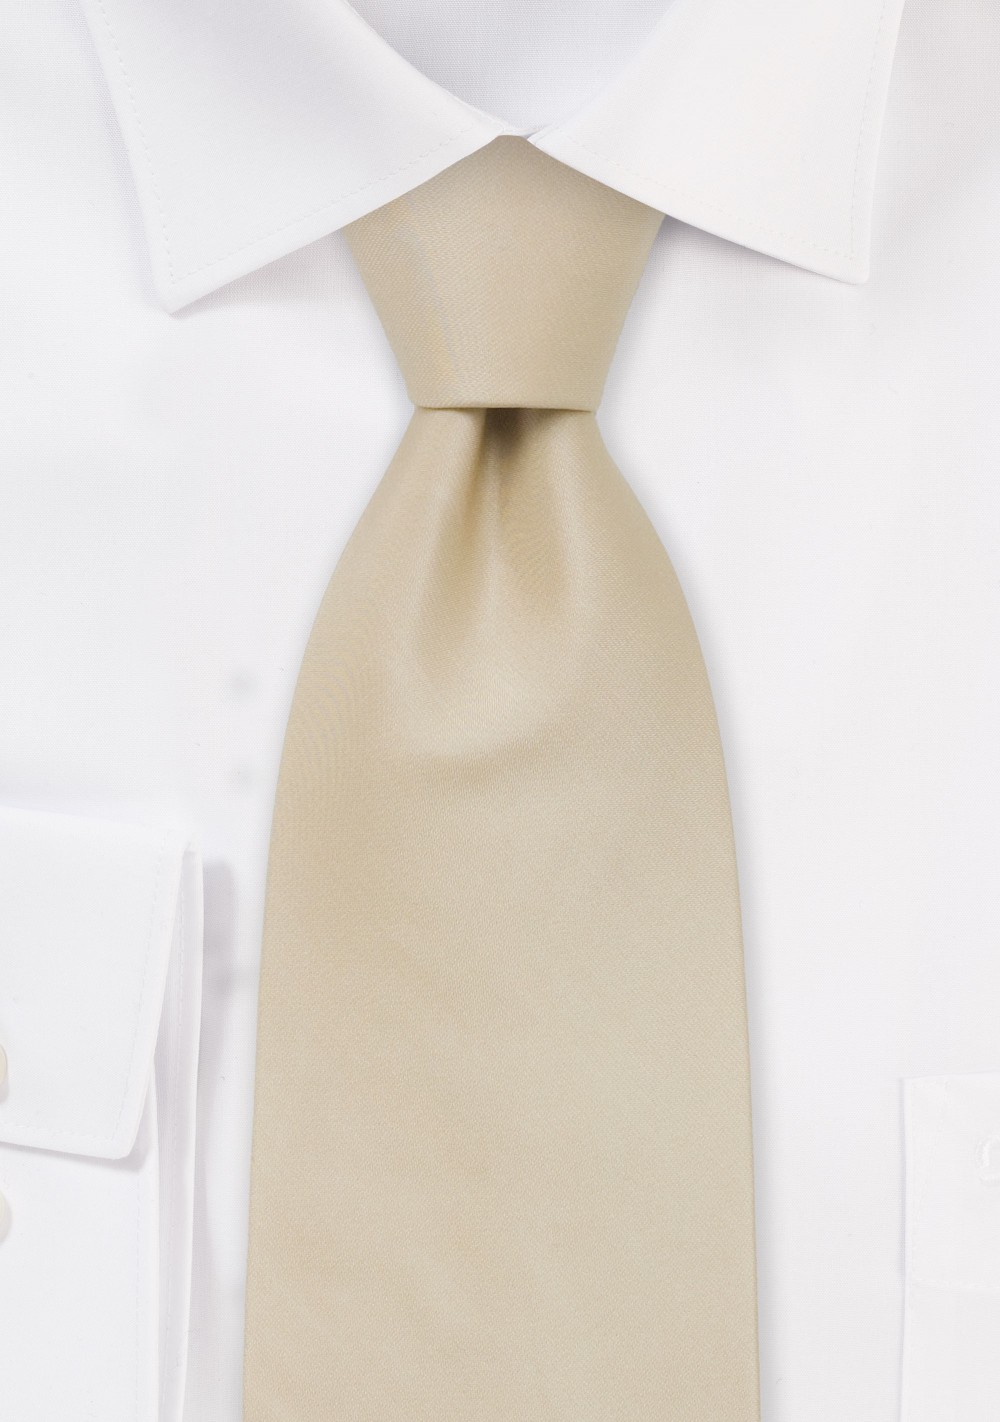 Solid color ties -  Handmade silk tie in solid cream color